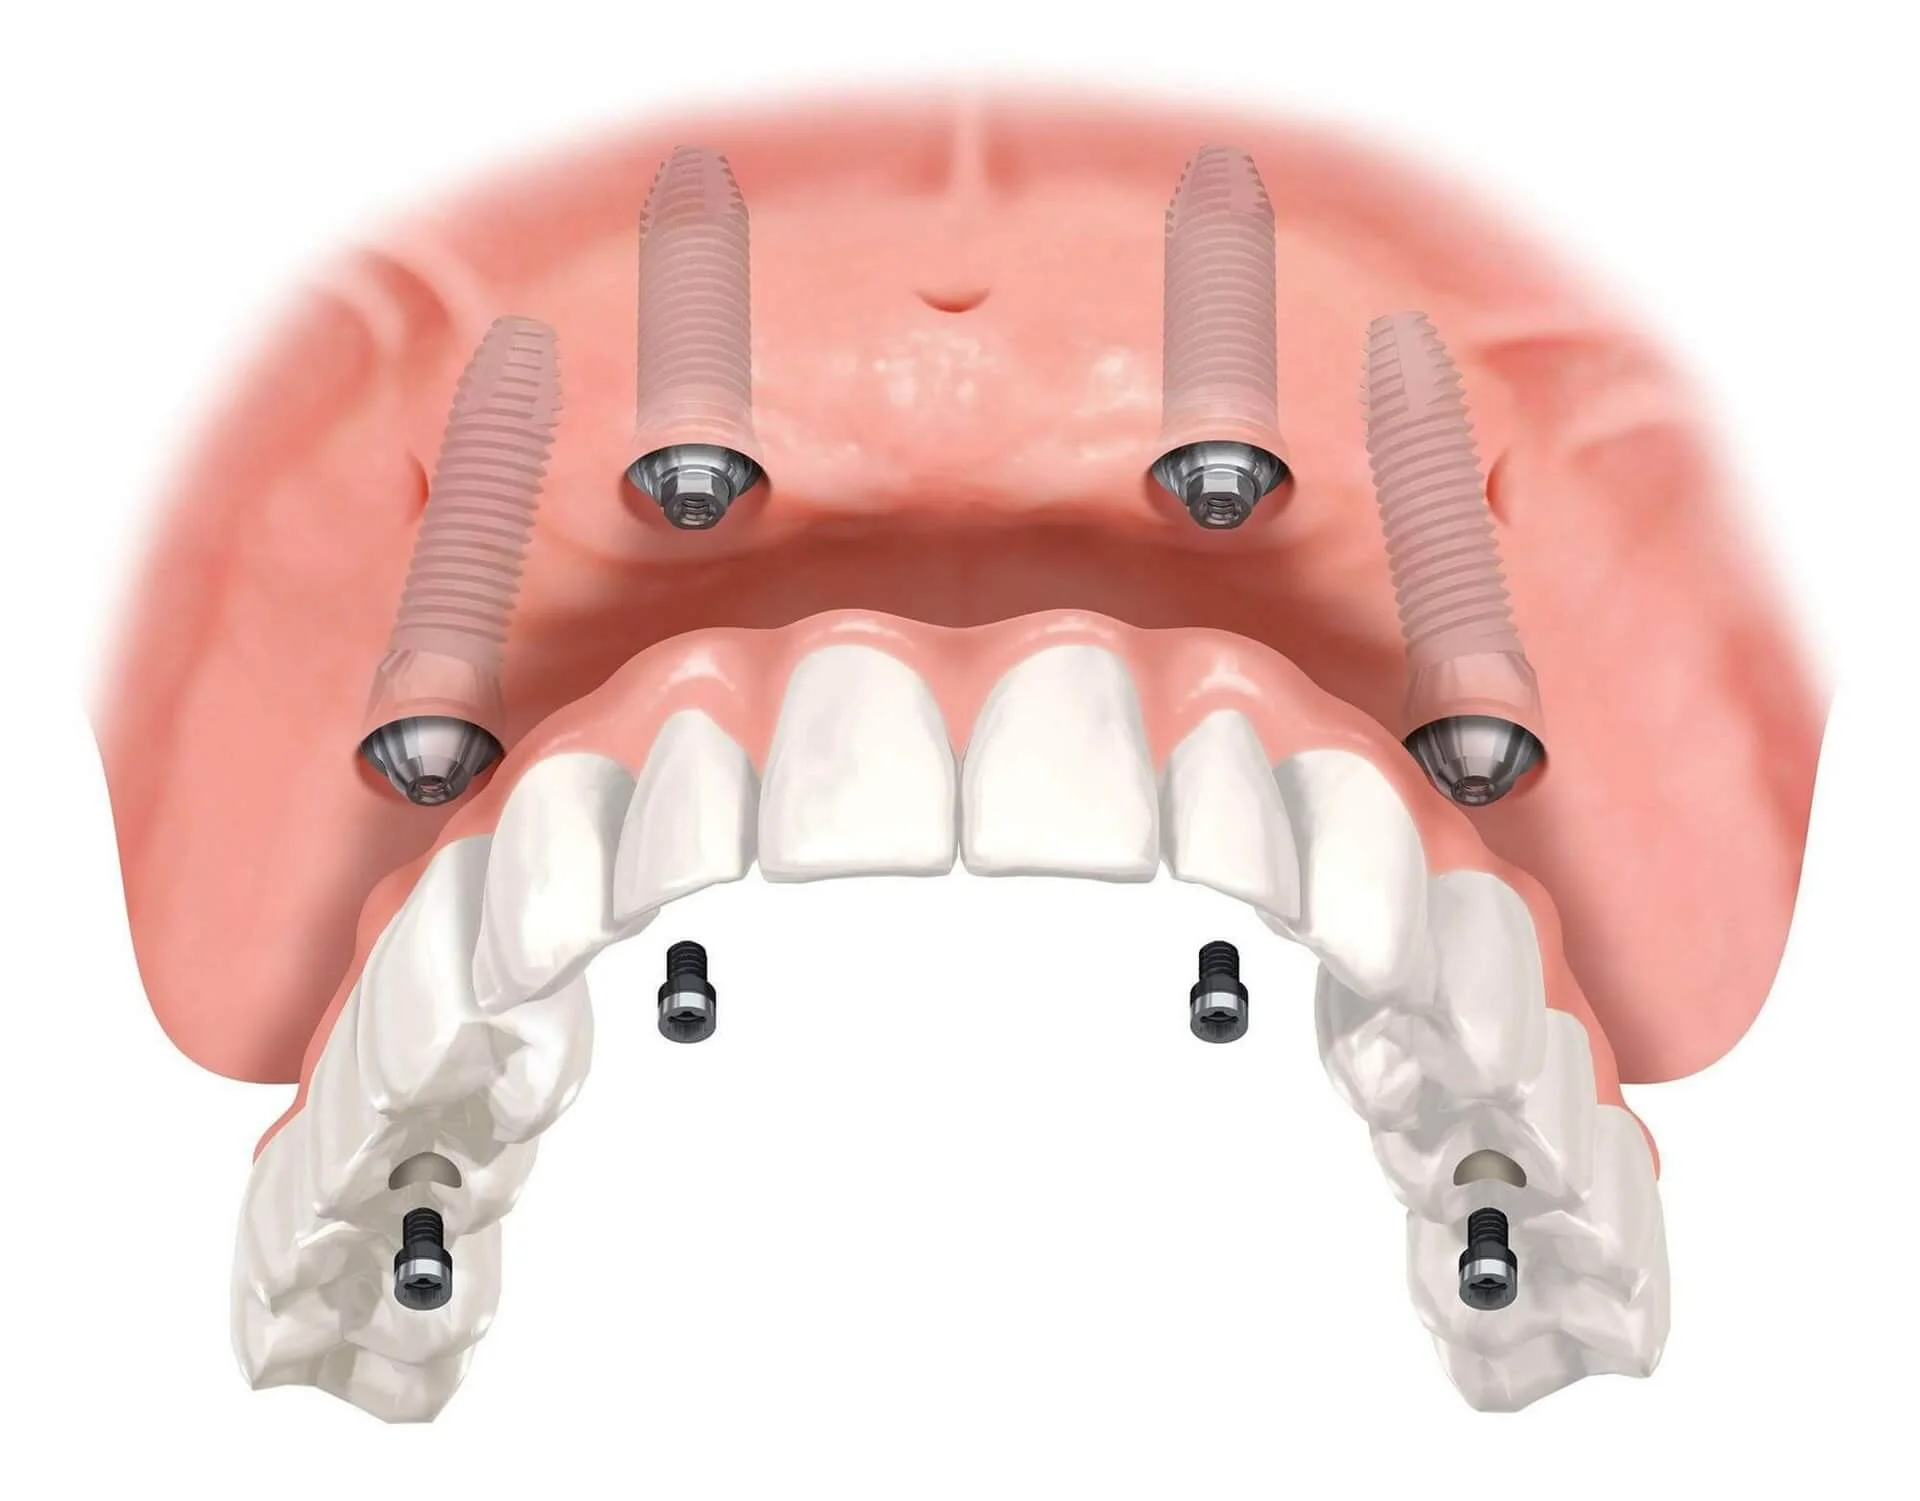 Dr_Gandhi_Dental_Clinic_Treatment_Dental_Implants_Of_Evaluation_For_Dental_Implants